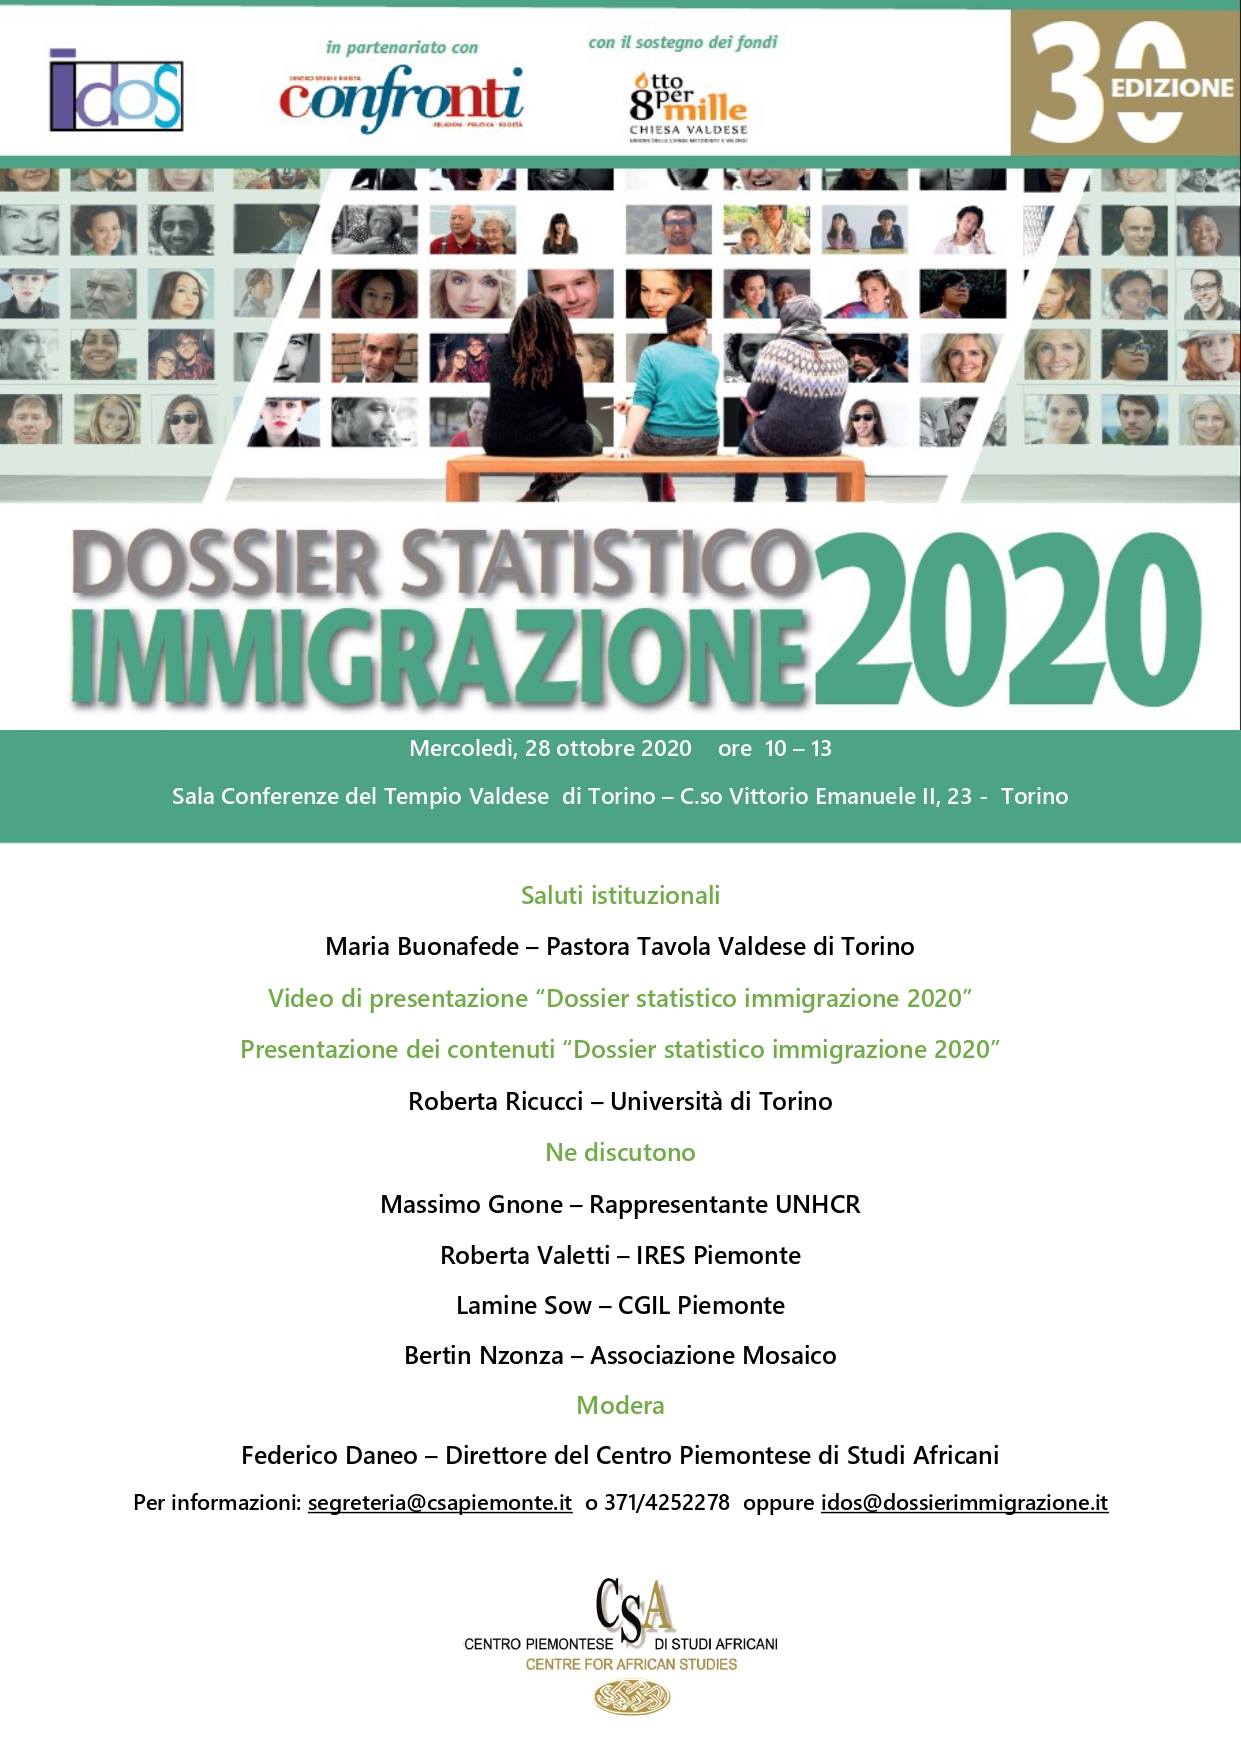 Presentazione del Dossier Statistico Immigrazione 2020